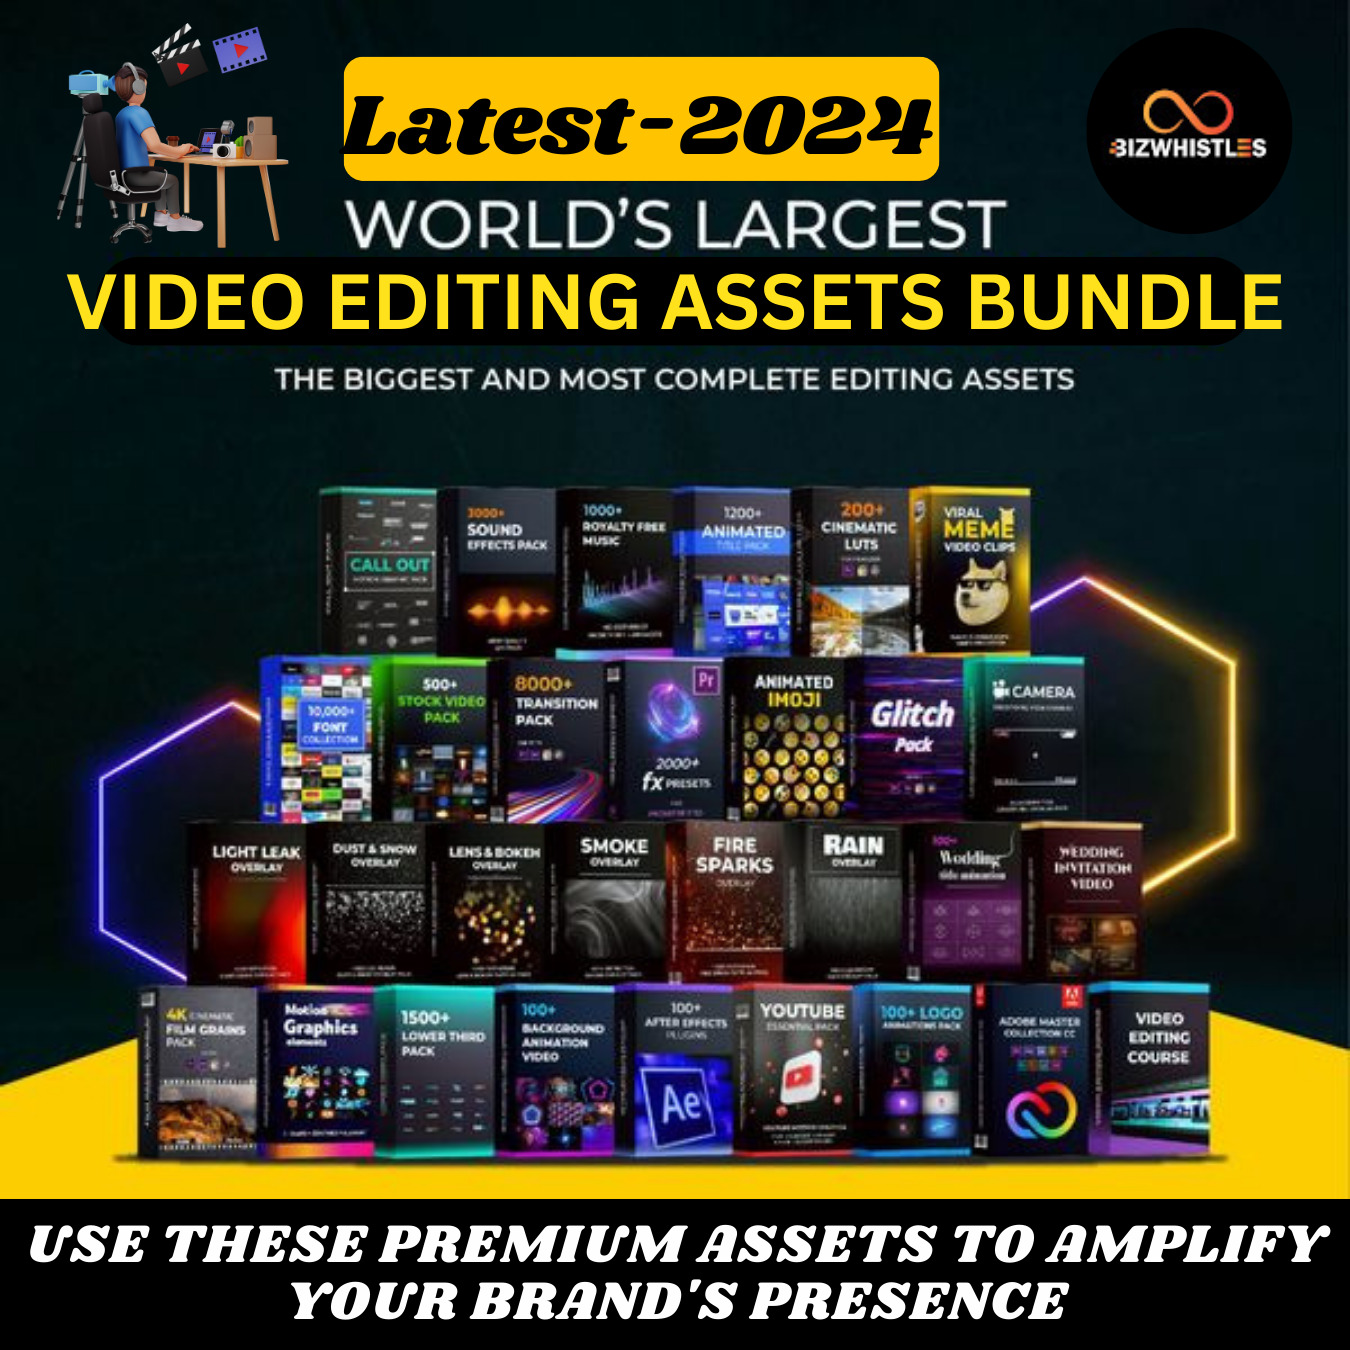 Complete Video editing bundle, Premier Pro Video Editing Assets, Video Editing